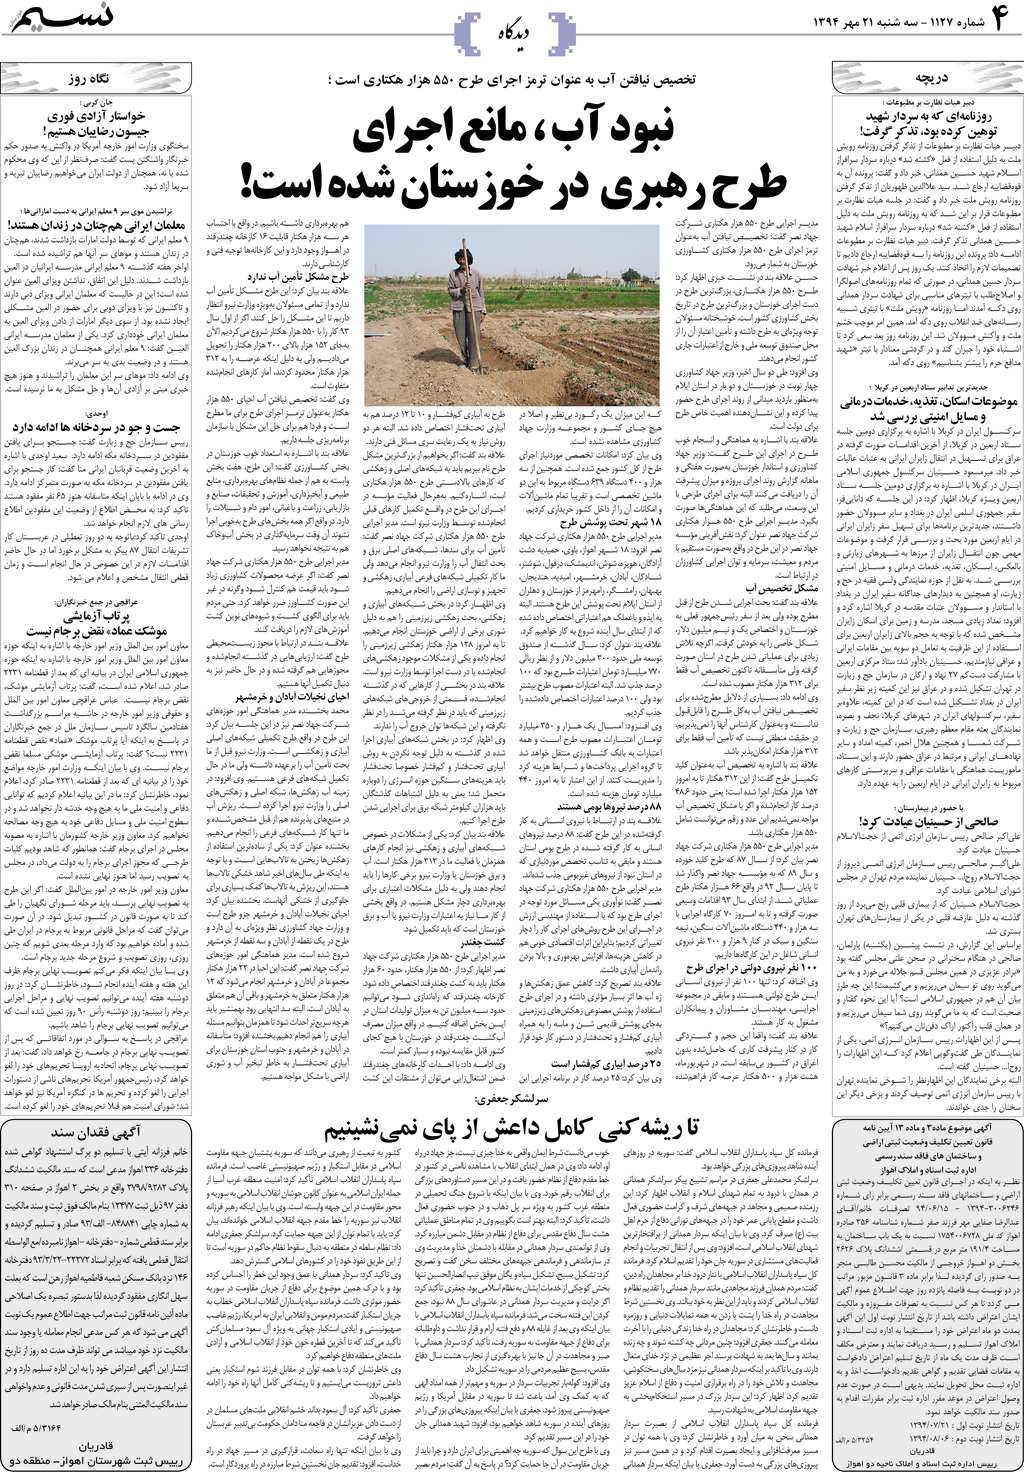 صفحه دیدگاه روزنامه نسیم شماره 1127